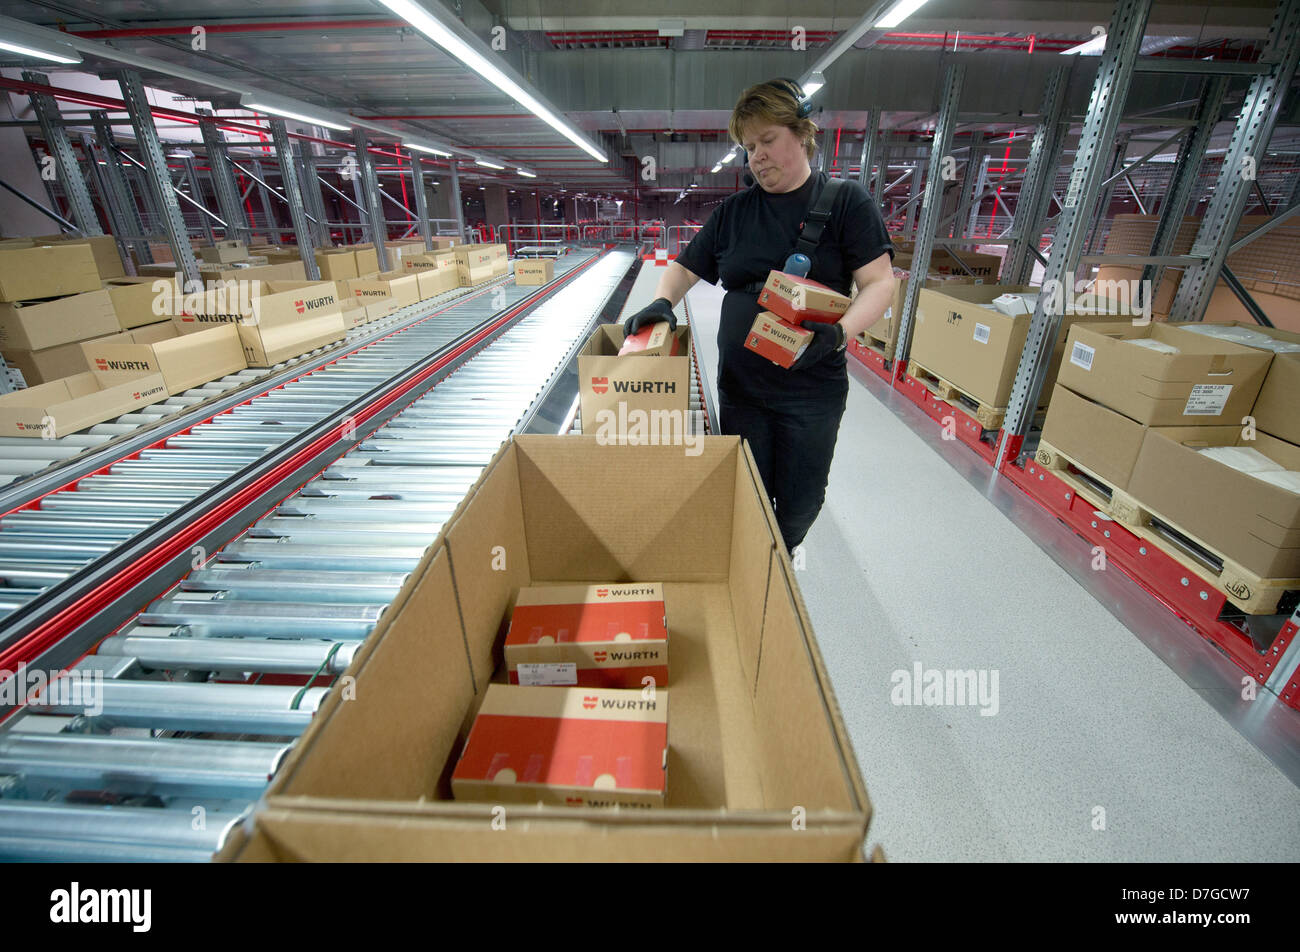 Ein Mitarbeiter der Wuerth-Gruppe arbeiten in der Stimme betrieben Auftragszentrum im Logistikzentrum in Künzelsau, Deutschland, 7. Mai 2013. Wuerth erwartet einen leichten Anstieg im Umsatz in diesem Jahr trotz der anhaltenden Wirtschaftskrise. Foto: MARIJAN MURAT Stockfoto